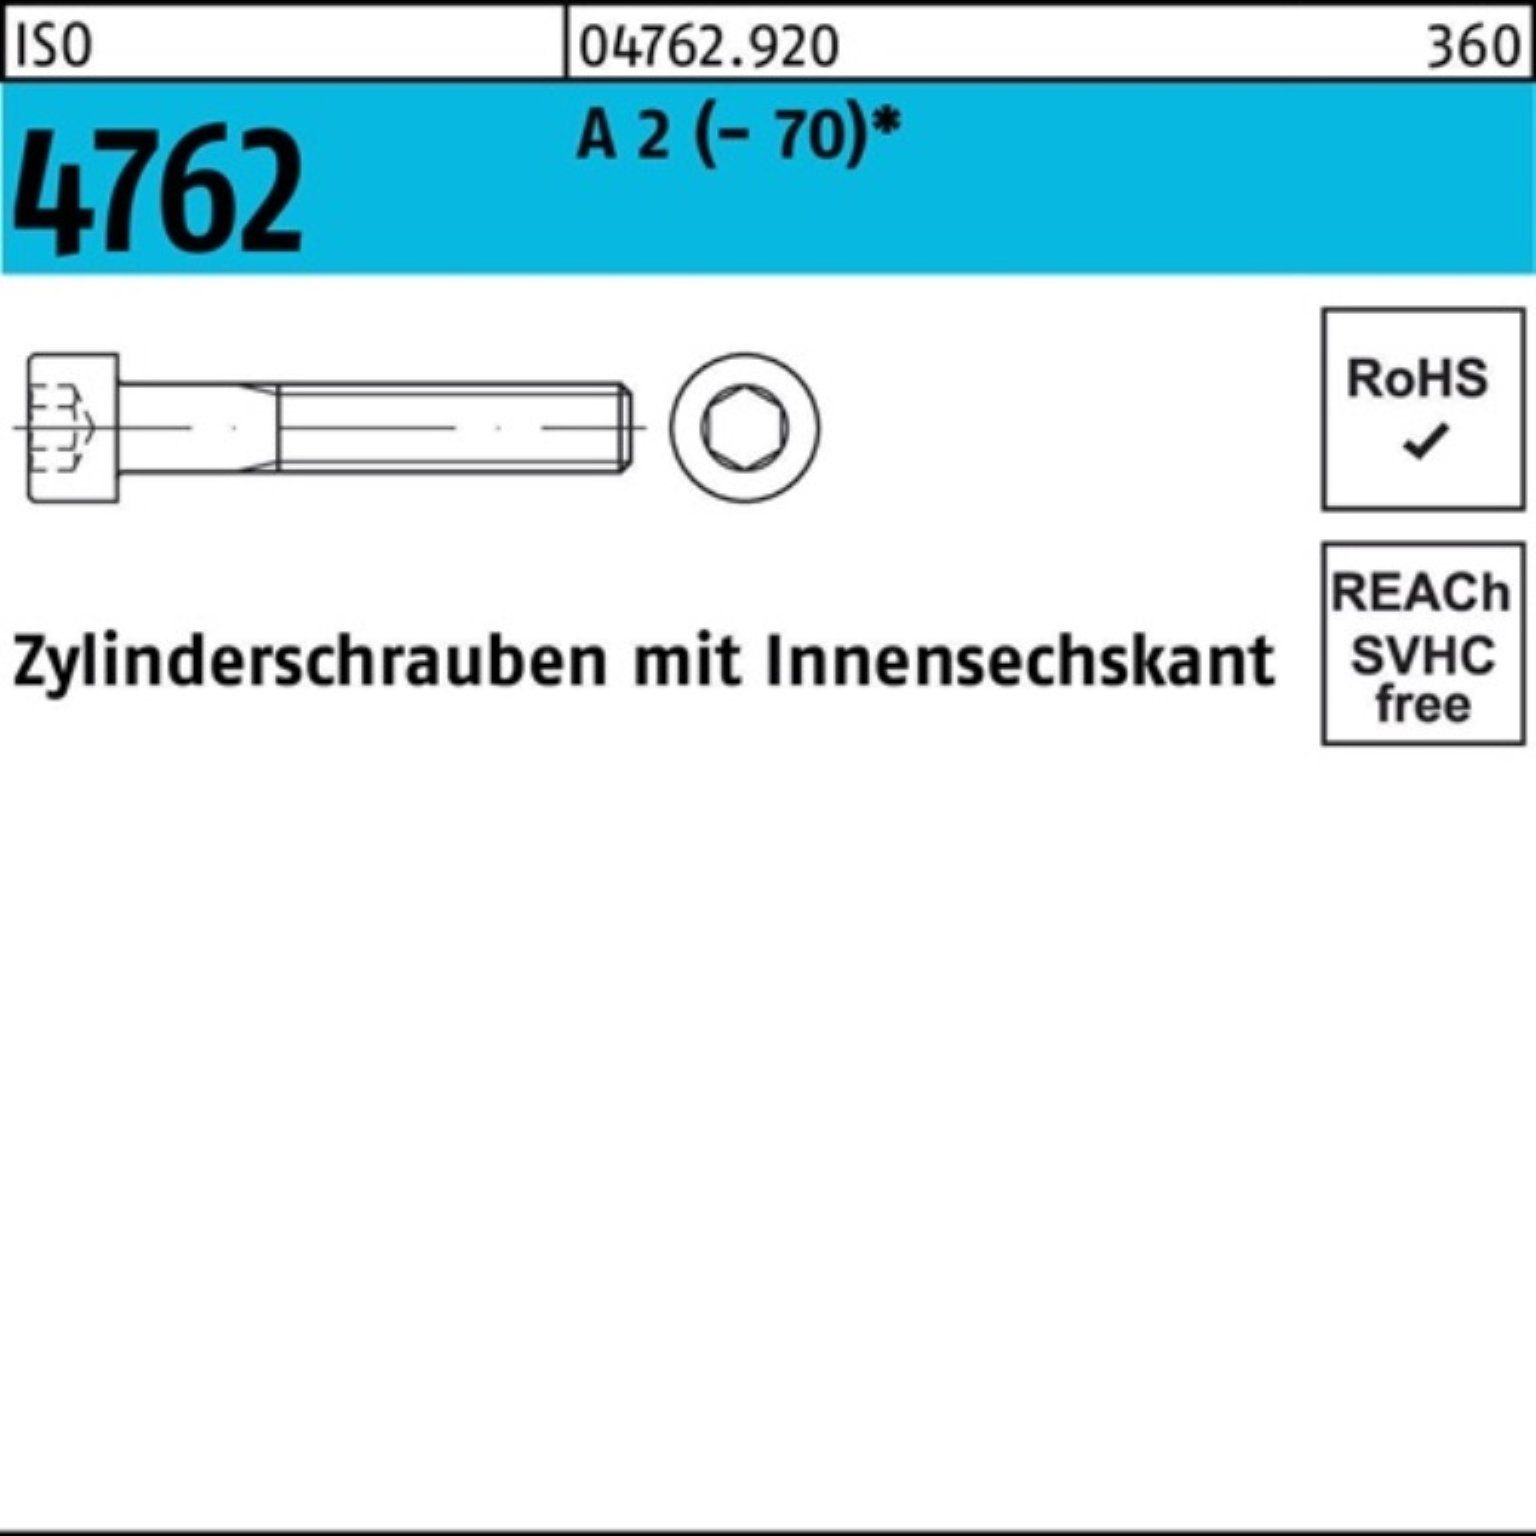 25 100 Zylinderschraube M8x 100er Zylinderschraube 2 S Reyher 4762 Innen-6kt (70) ISO Pack A